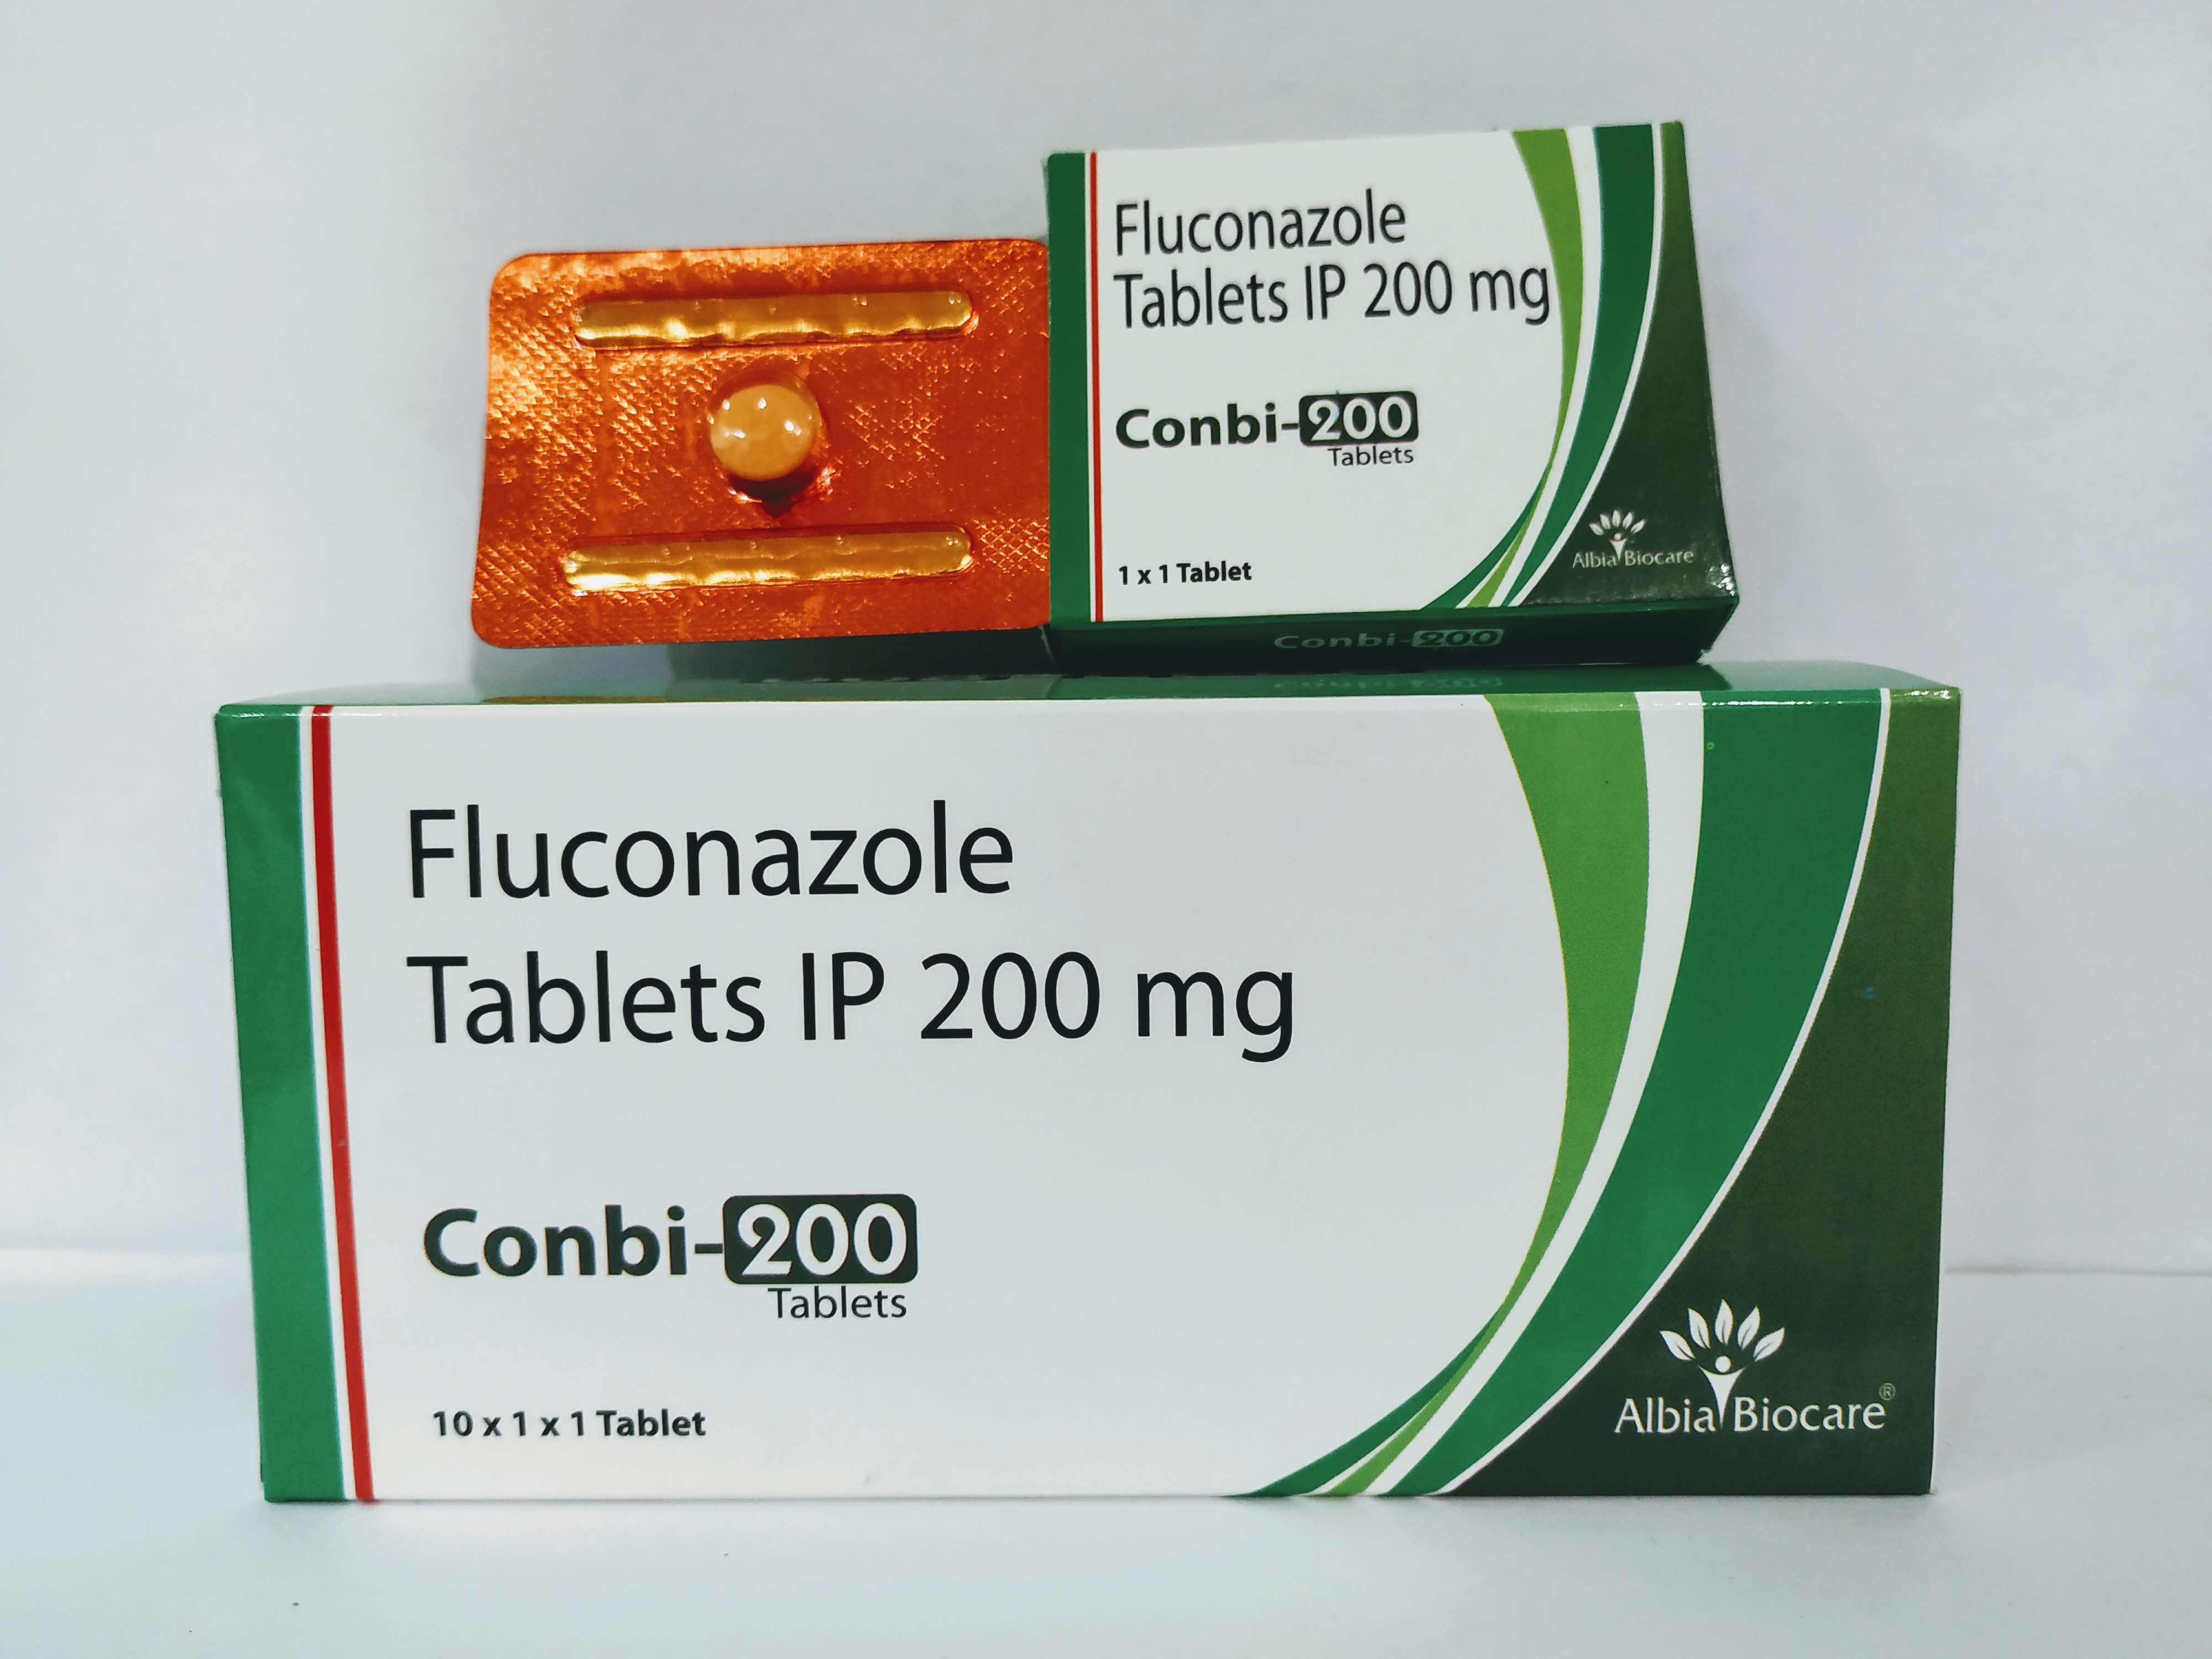 CONBI-200 Tablet | Fluconazole 200mg